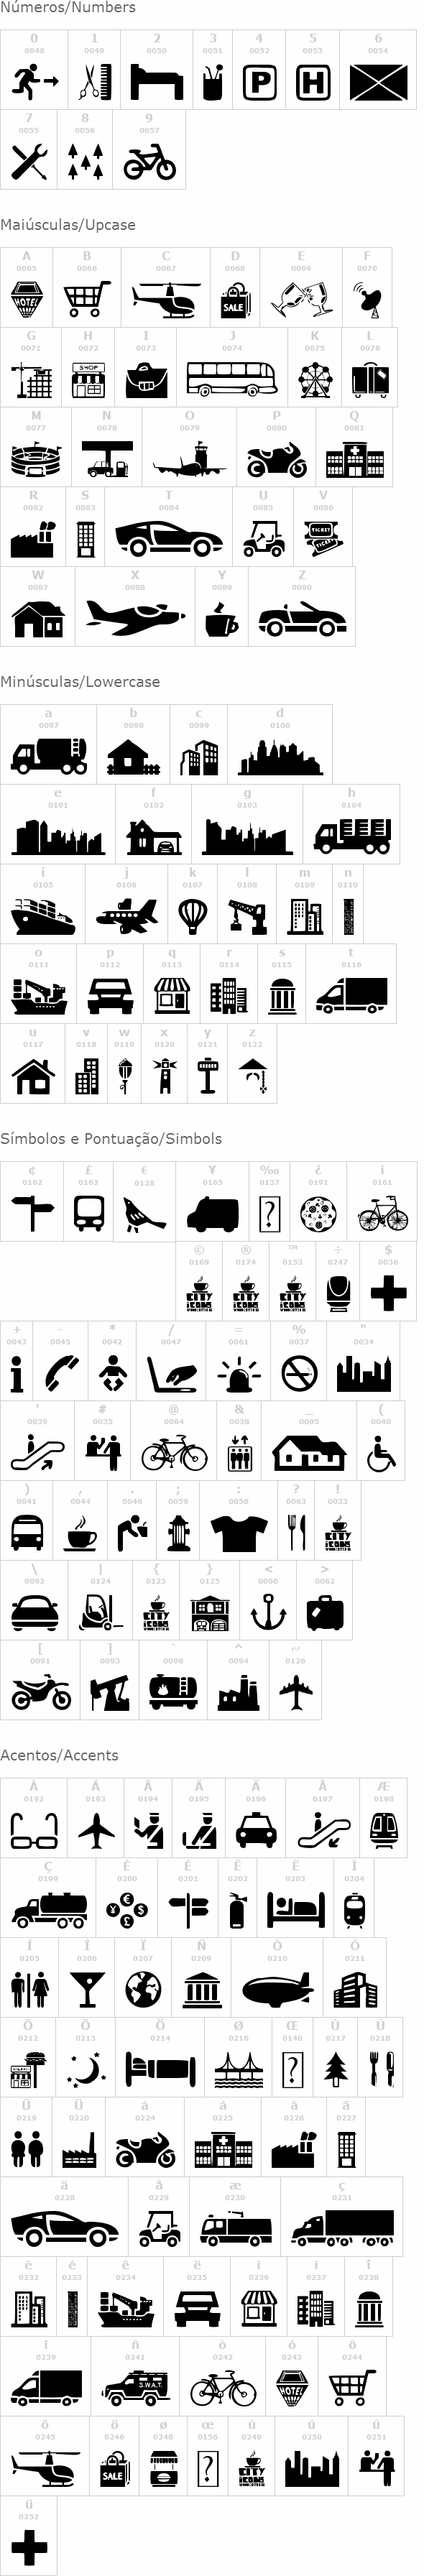 City Icons